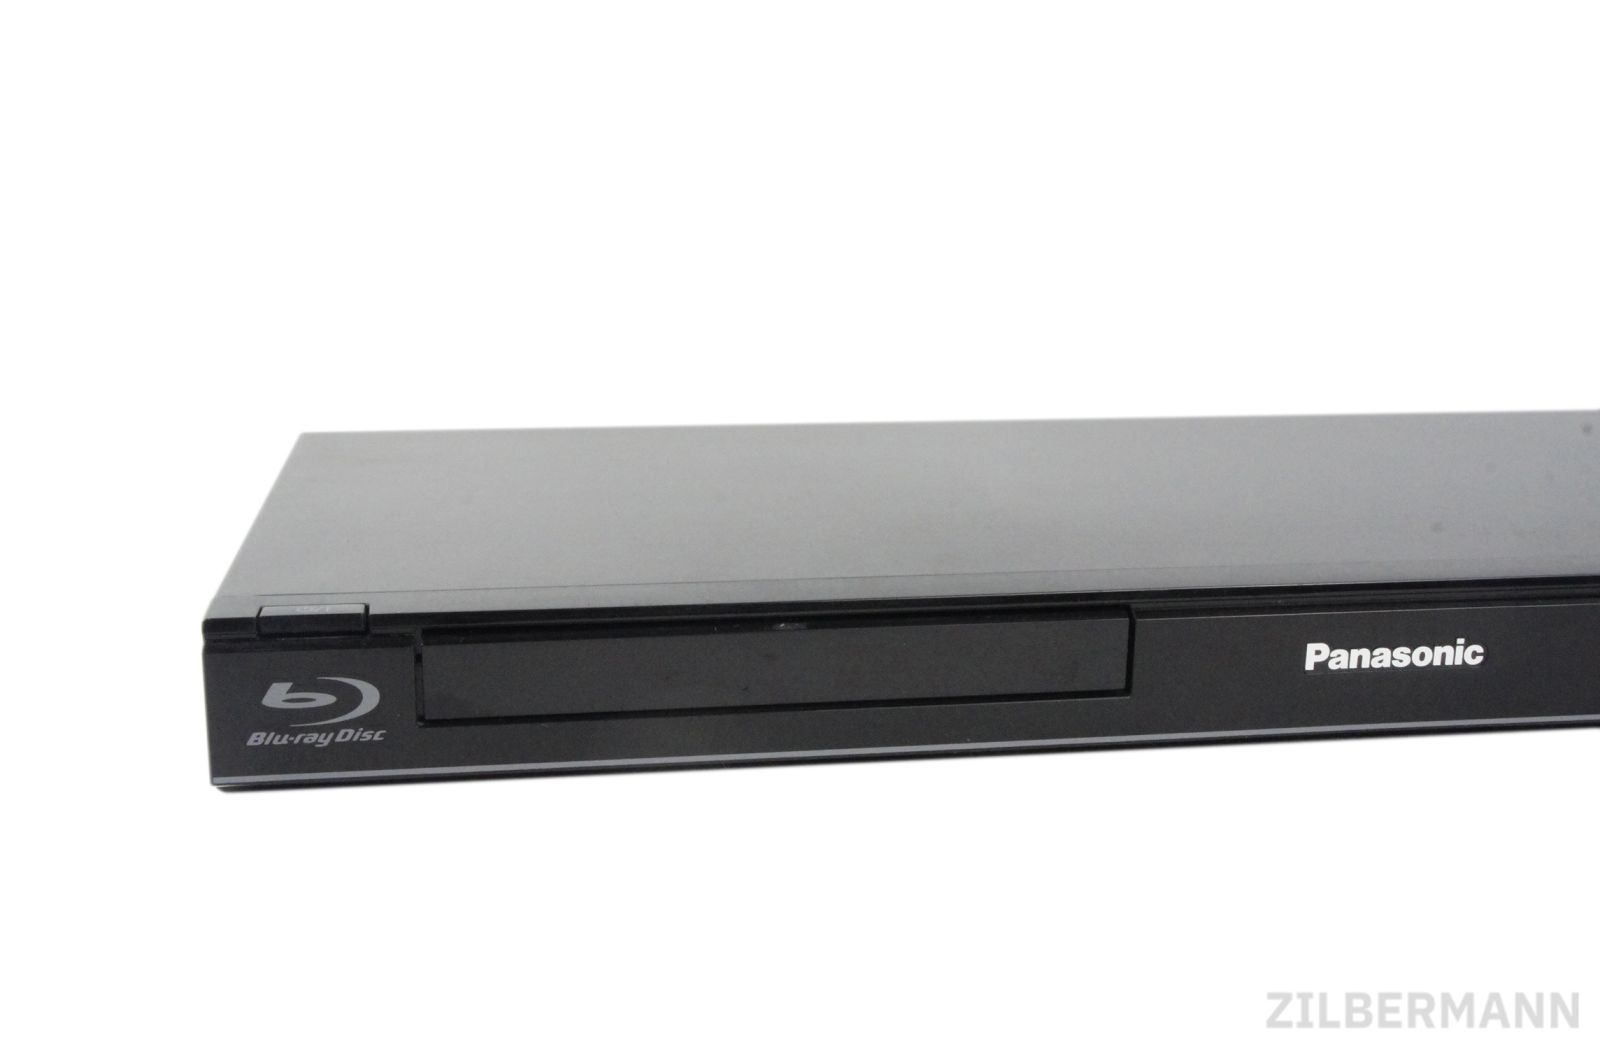 Panasonic_DMP-BD75EG-S_Blu-ray-Player_HDMI_Upscaler_1080p_USB_09